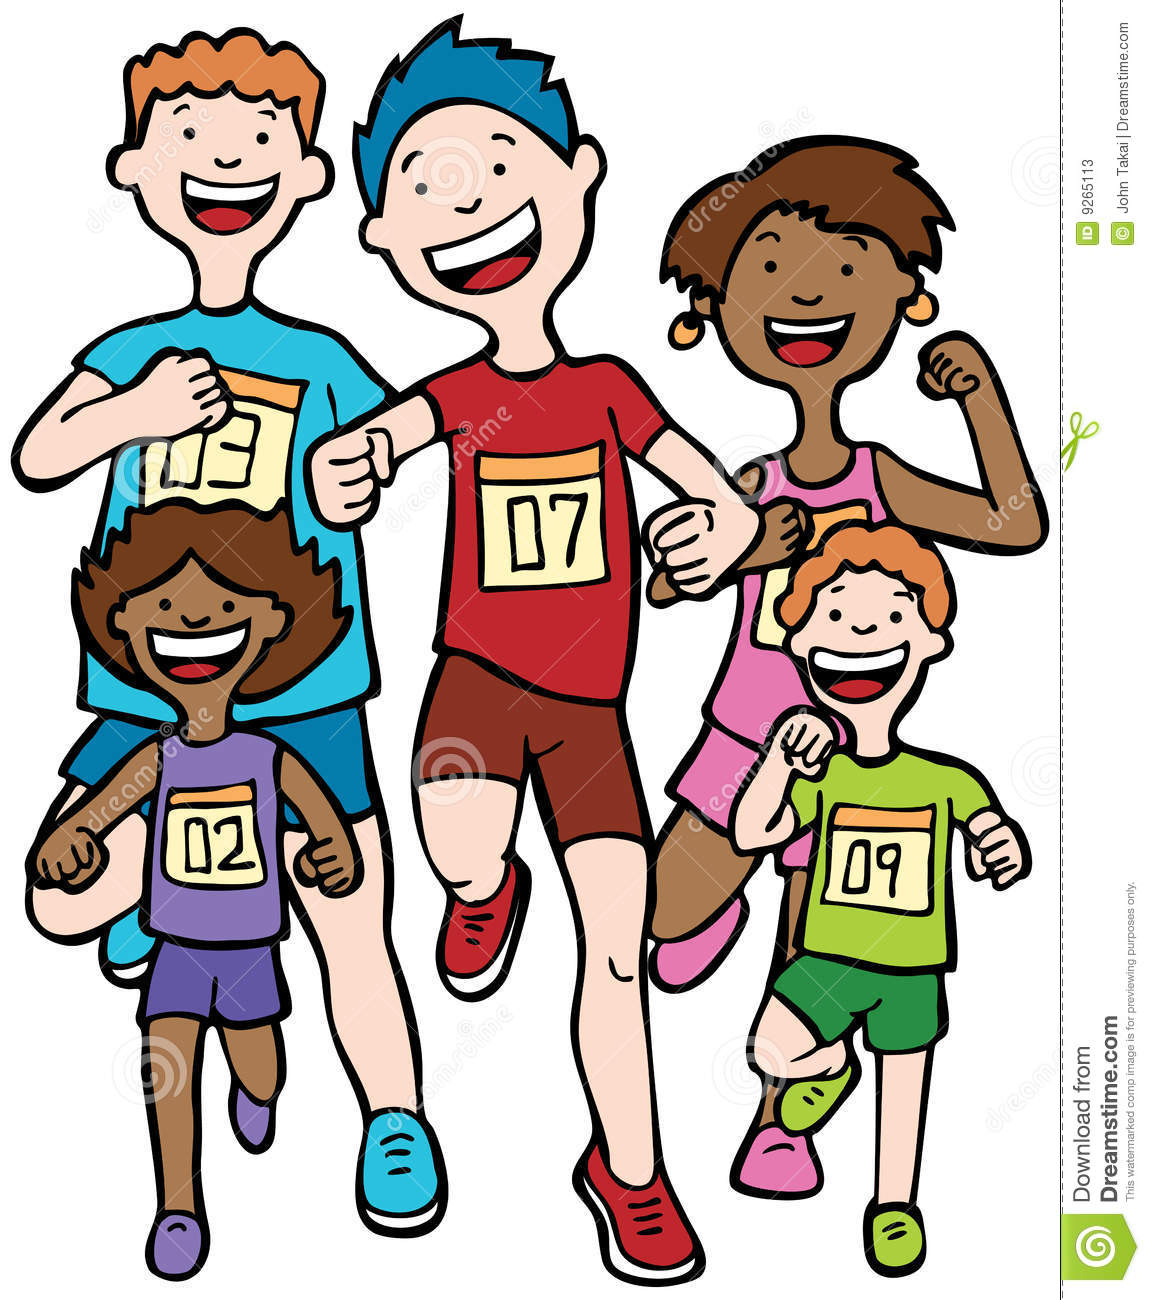 runner clipart simple family